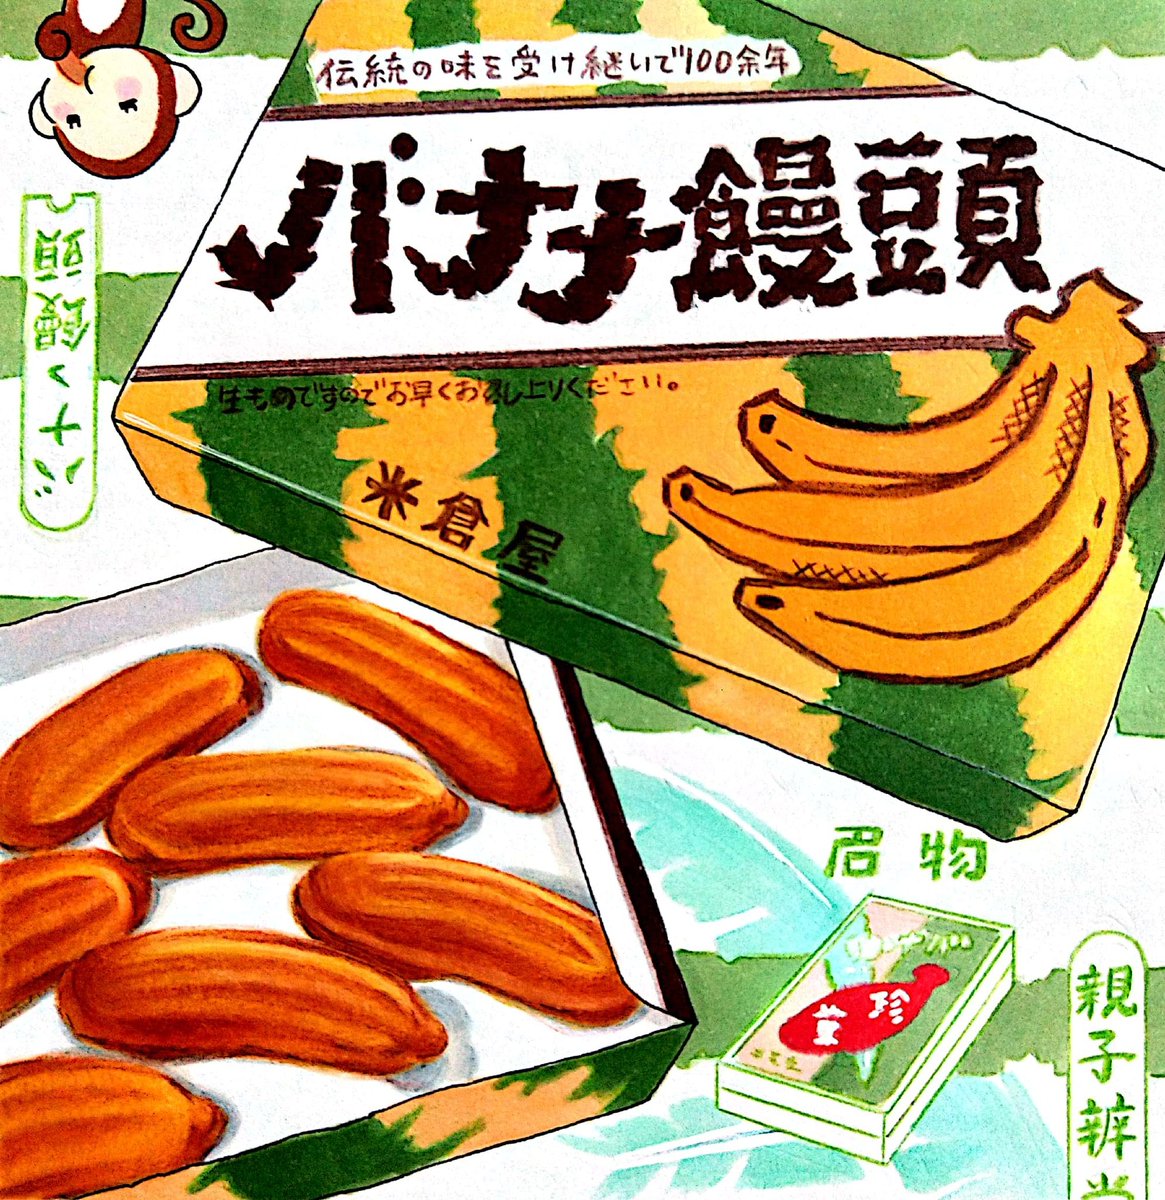 今日は #バナナの日 🍌
バナナ饅頭のほっくりとした白餡とふわふわの生地。また食べたい。
#田島ハルのくいしん簿 #イラスト 